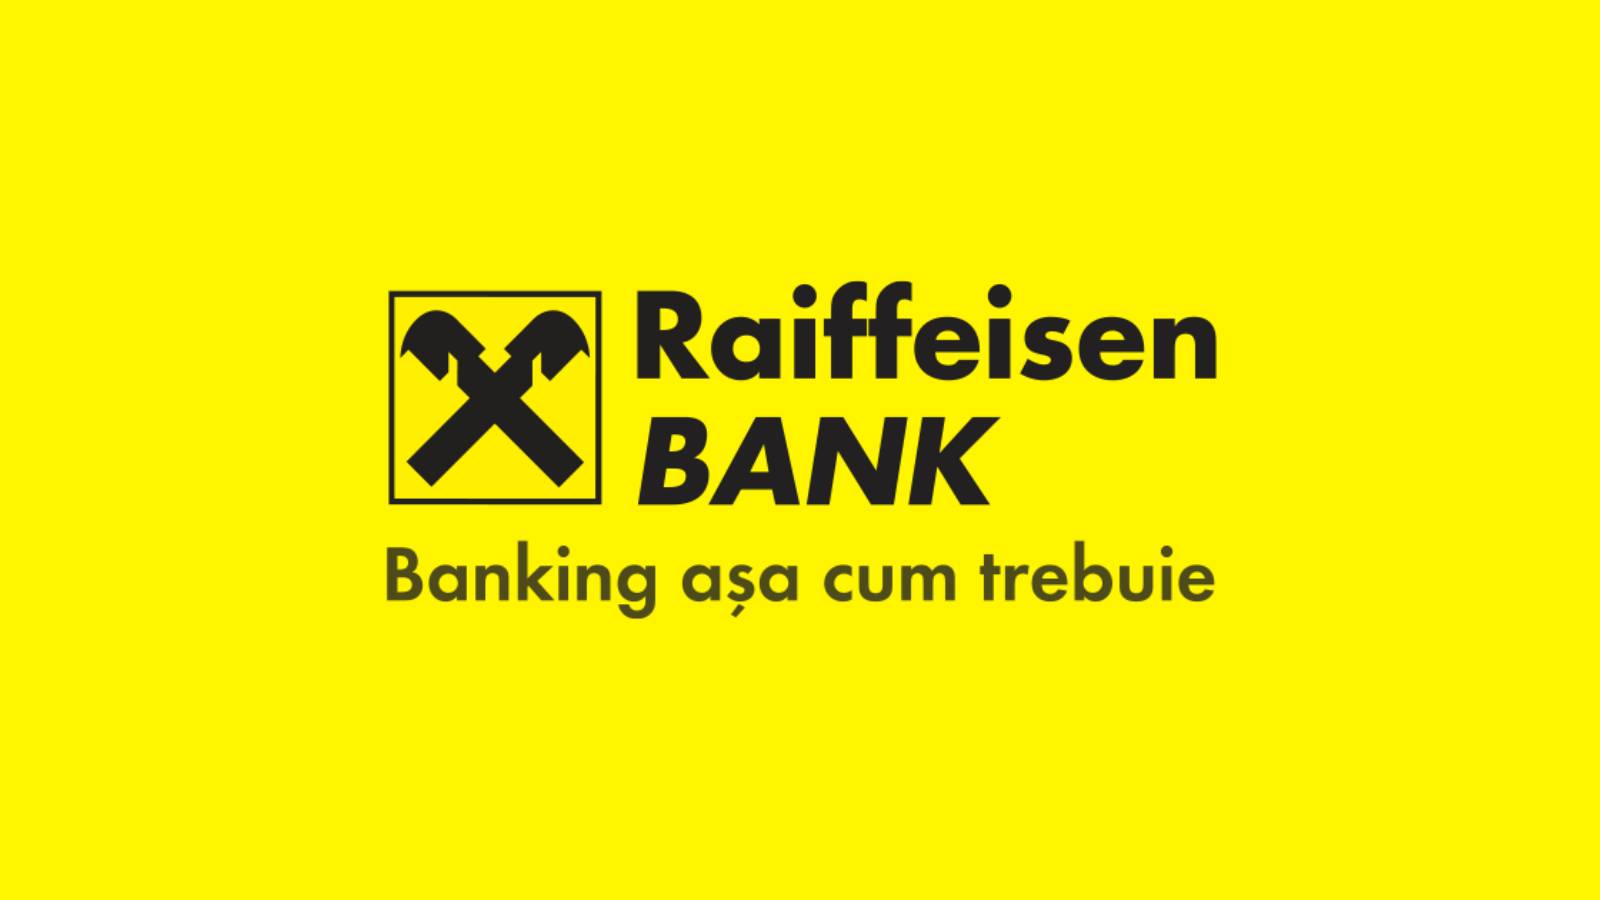 Praca w banku Raiffeisen